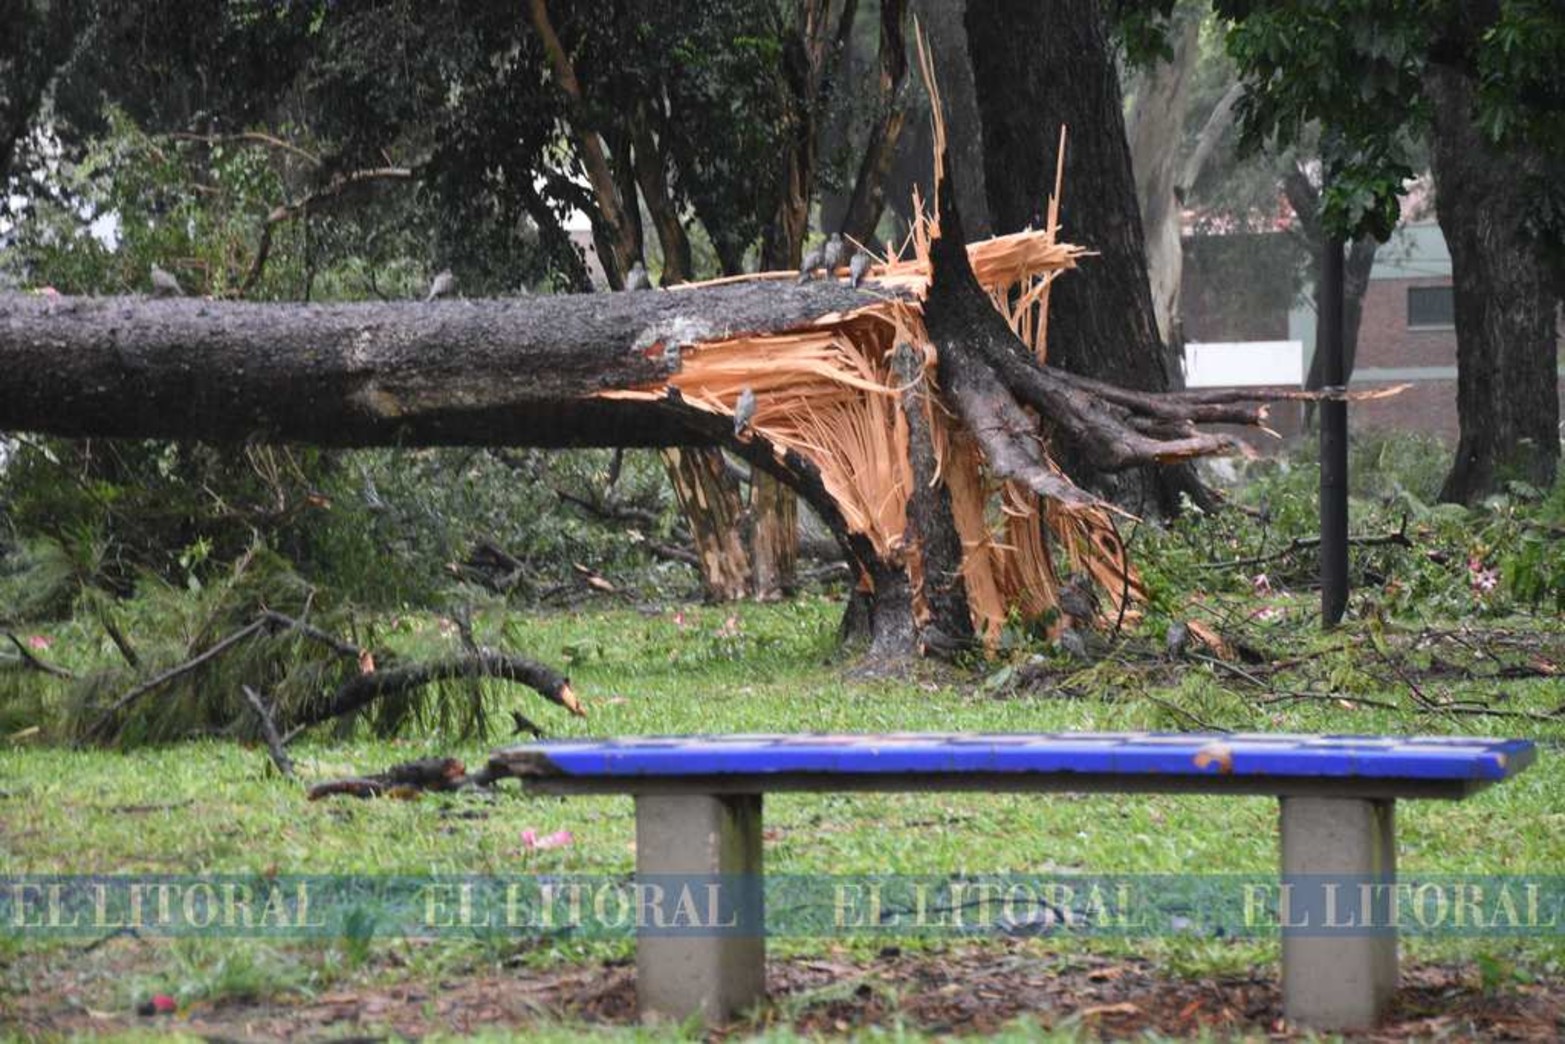 Las tormentas se llevan años de crecimiento. Como un ciclo natural los fuertes ráfagas de viento suelen tumbar árboles.